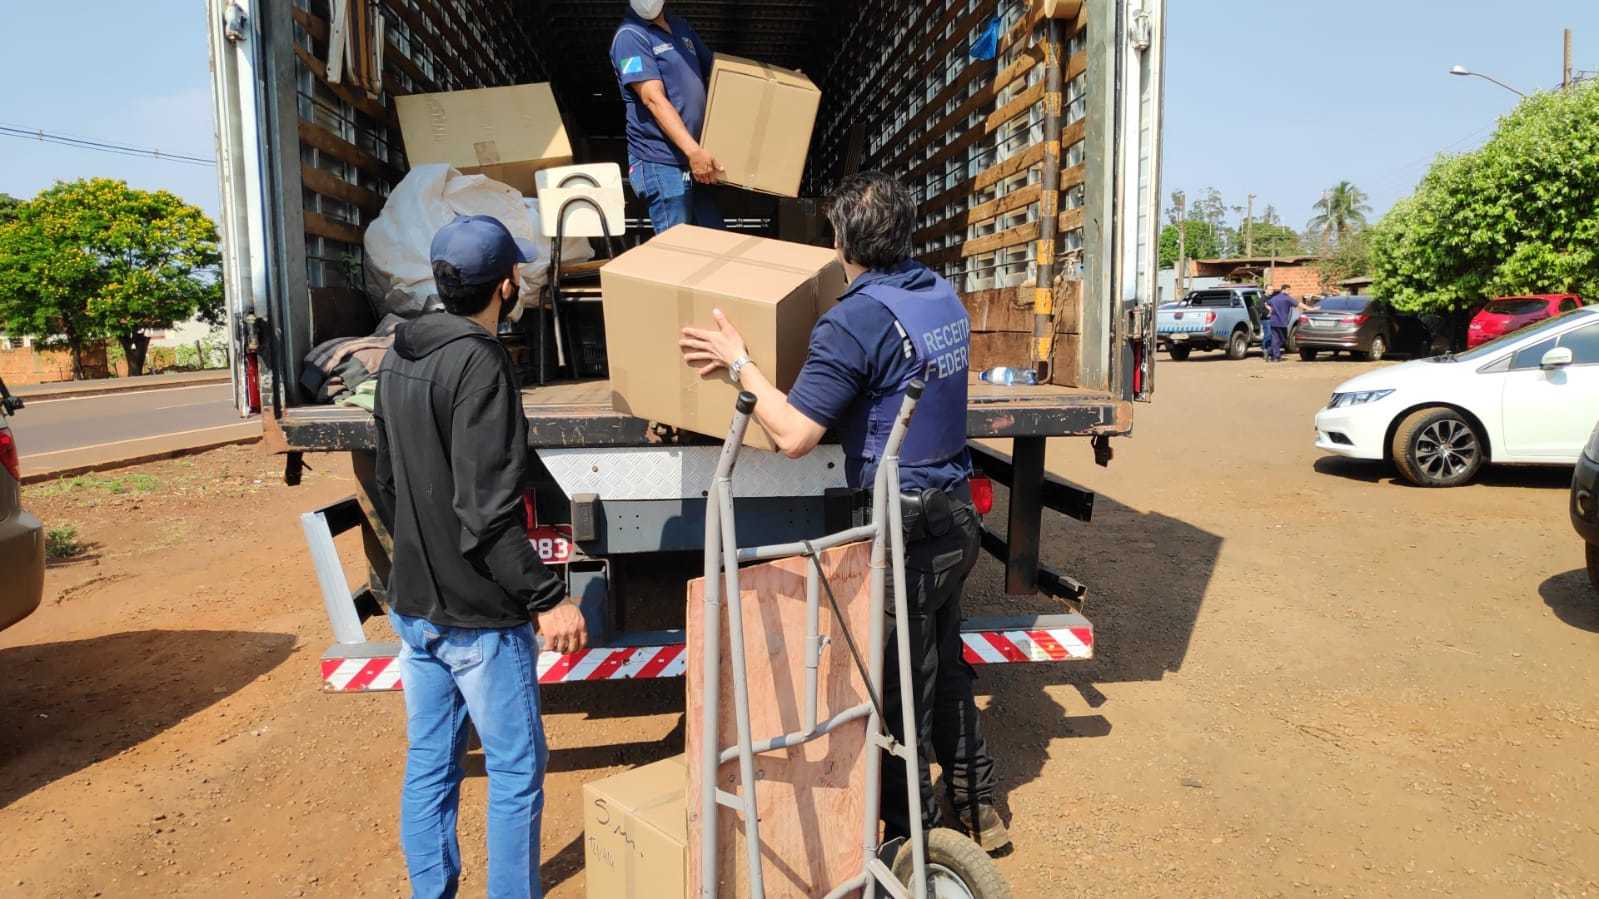 Caixas com materiais contrabandeados encontrados em hotel são colocadas em caminhão (Foto: Adilson Domingos)